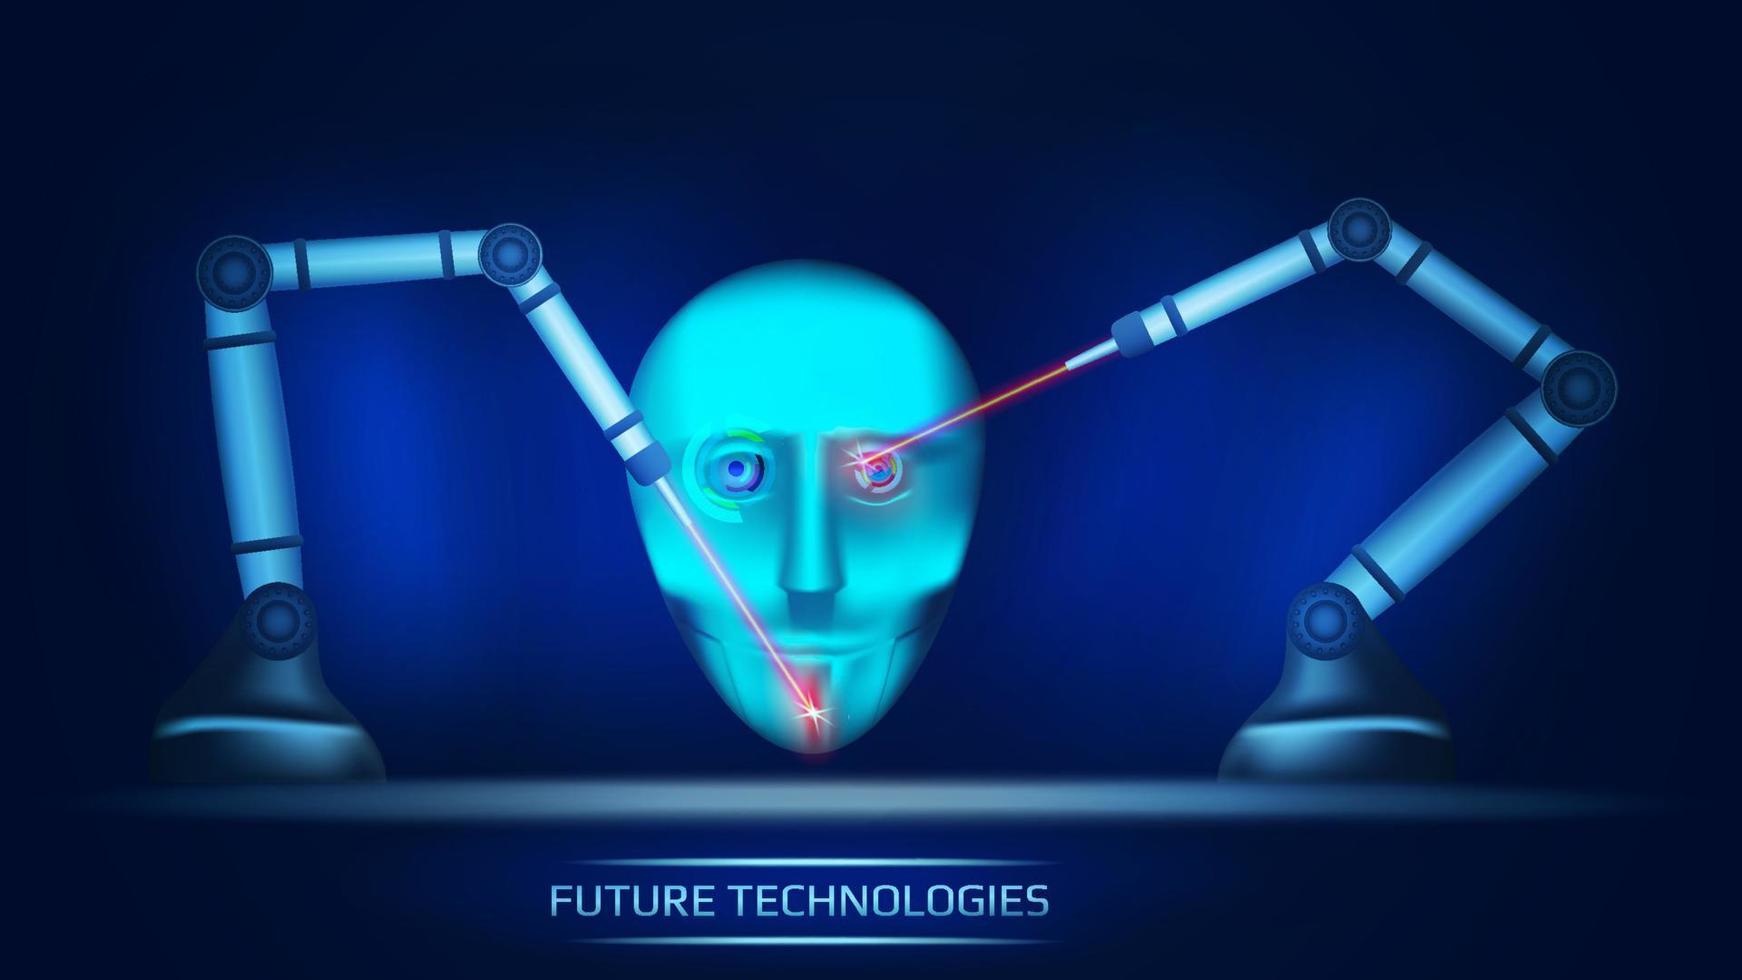 um conceito futurista de inteligência artificial onde dois manipuladores mecânicos criam cabeças cibernéticas de robôs com lasers. cara de ciborgue. ilustração vetorial. vetor